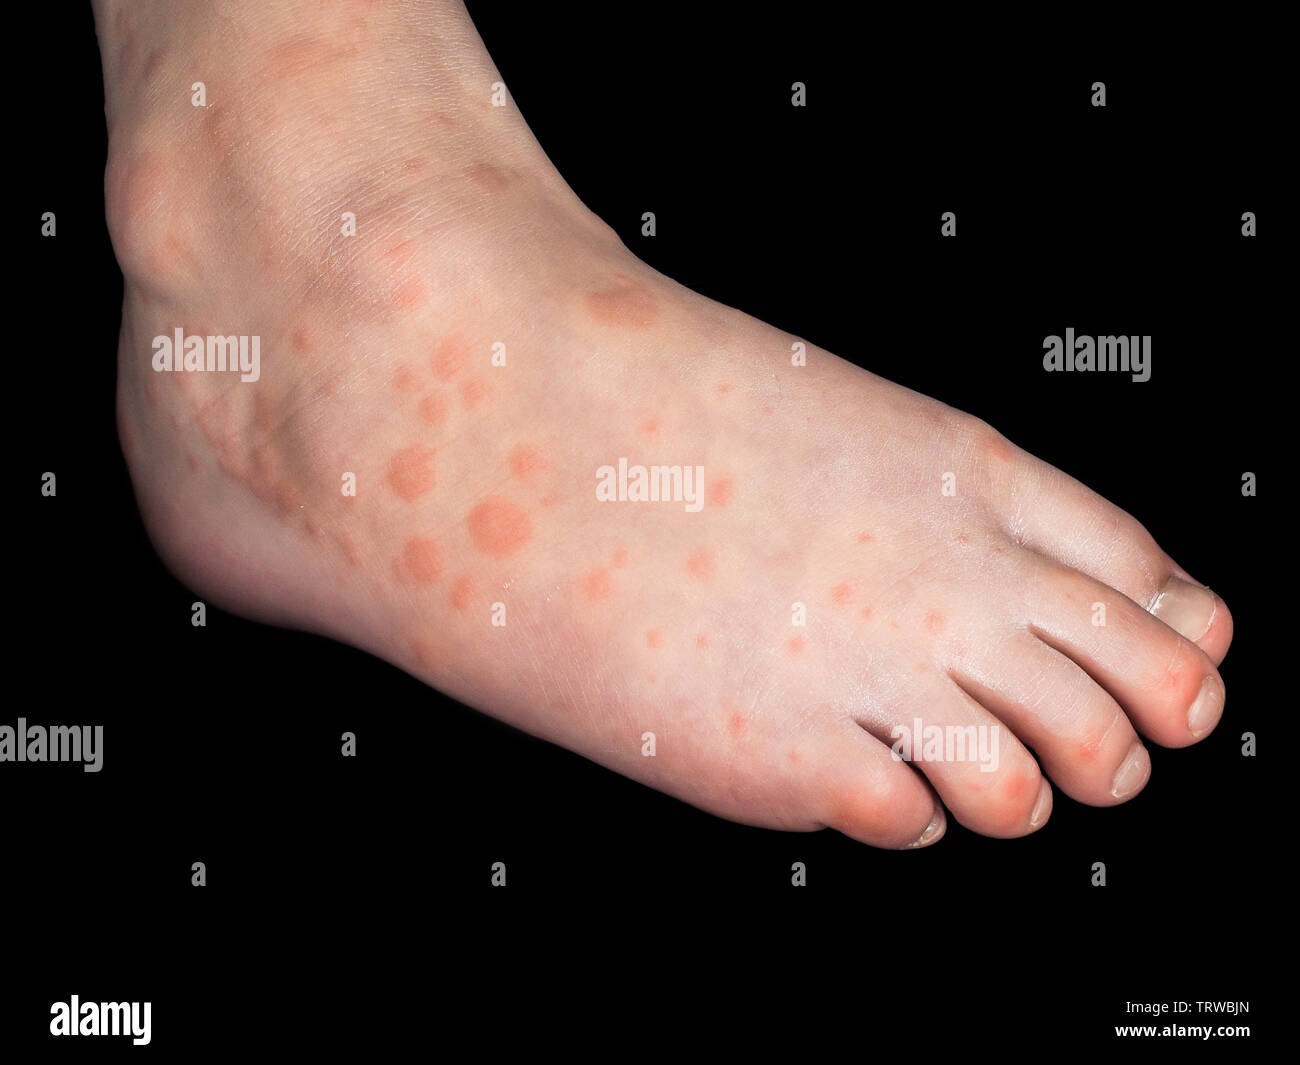 Kind mit roten Ausschlag von Coxsackievirus, auf dem rechten Fuß, isoliert  auf Schwarz Stockfotografie - Alamy